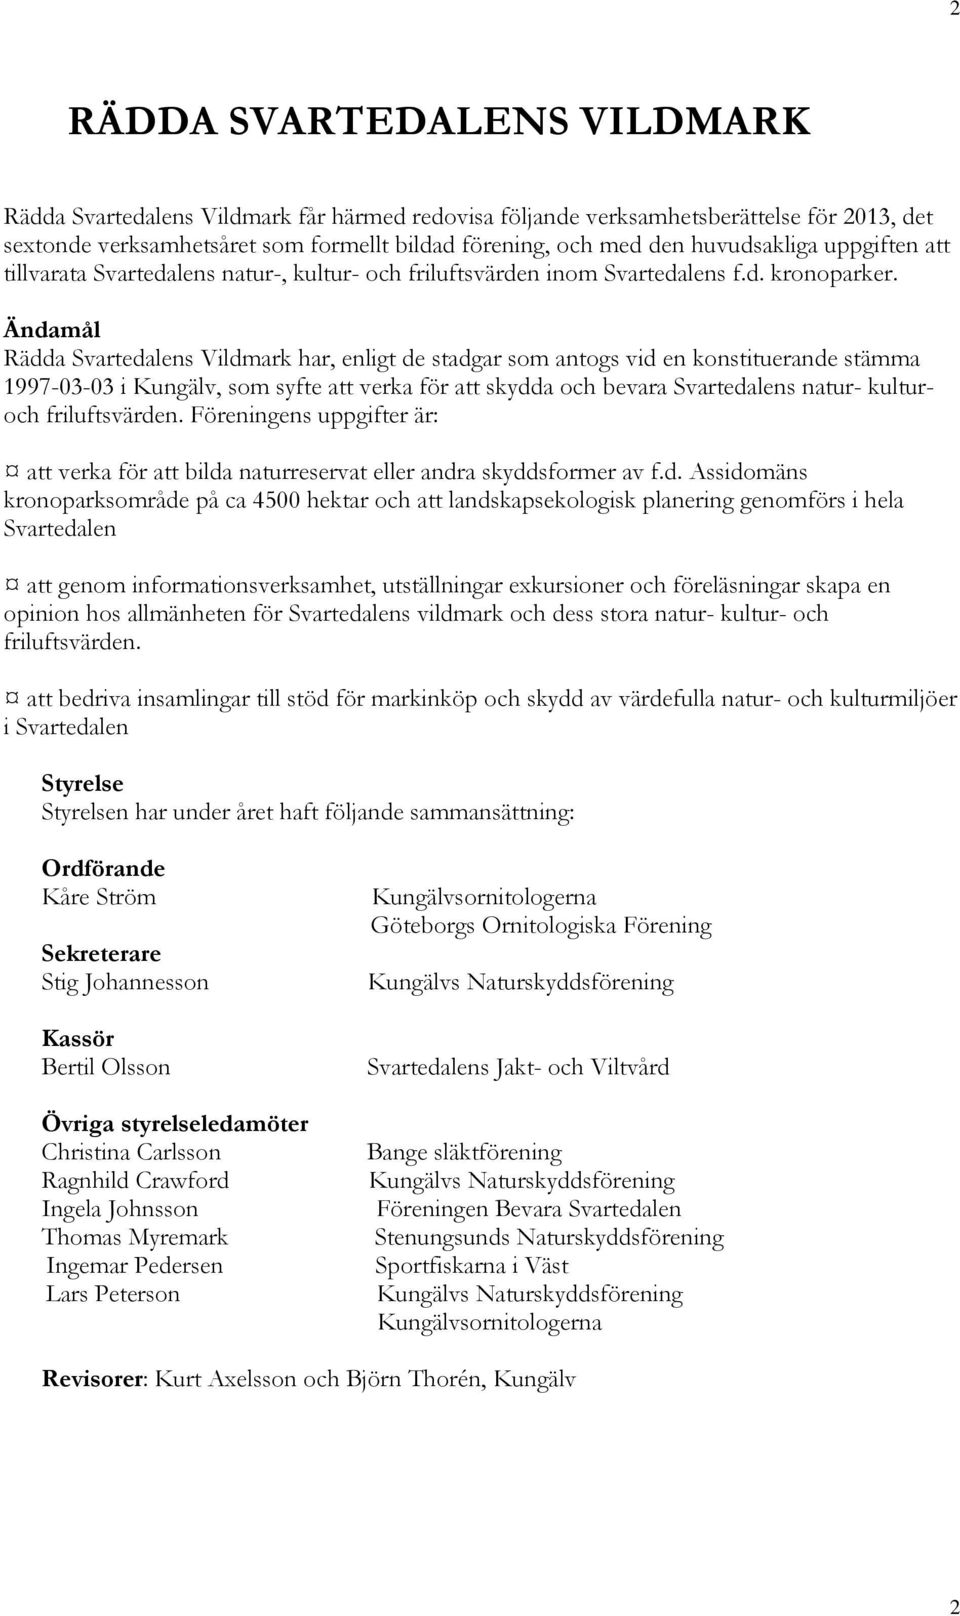 Ändamål Rädda Svartedalens Vildmark har, enligt de stadgar som antogs vid en konstituerande stämma 1997-03-03 i Kungälv, som syfte att verka för att skydda och bevara Svartedalens natur- kulturoch